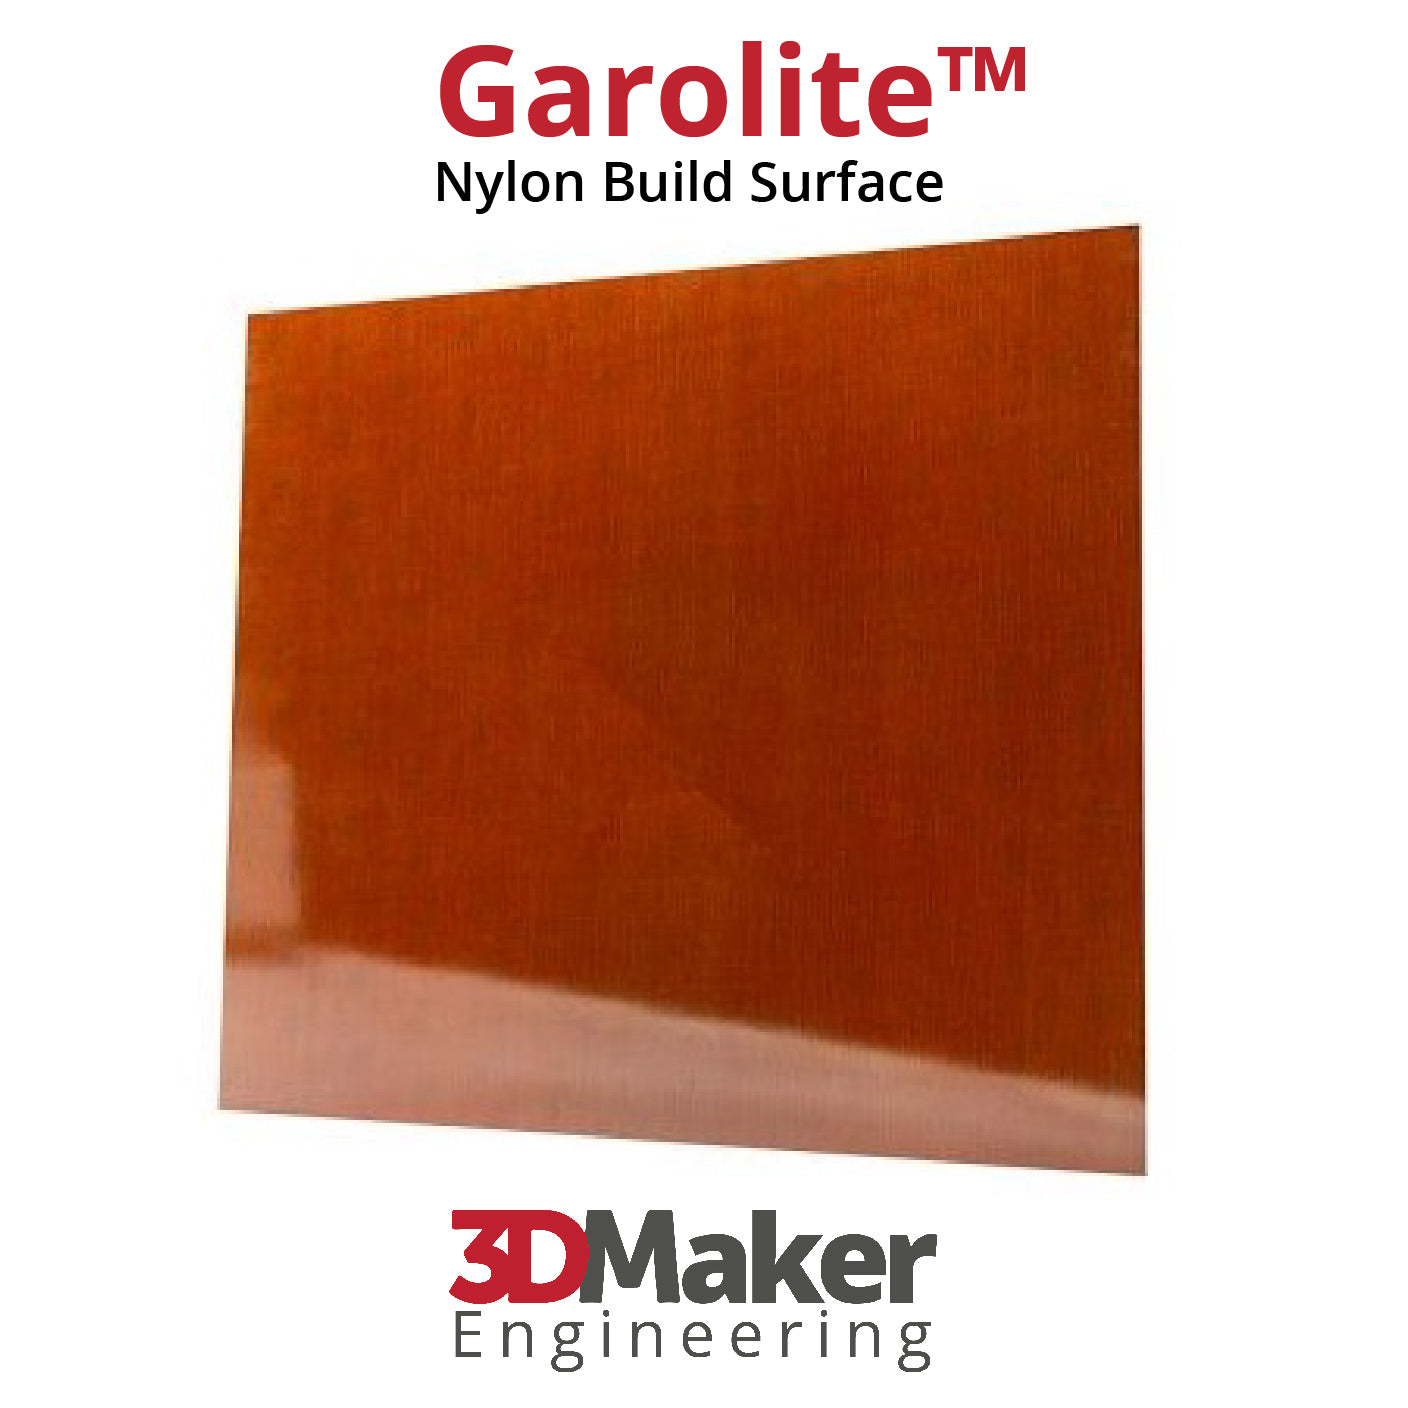 Garolite 3D Printer Build Plate - Engineering